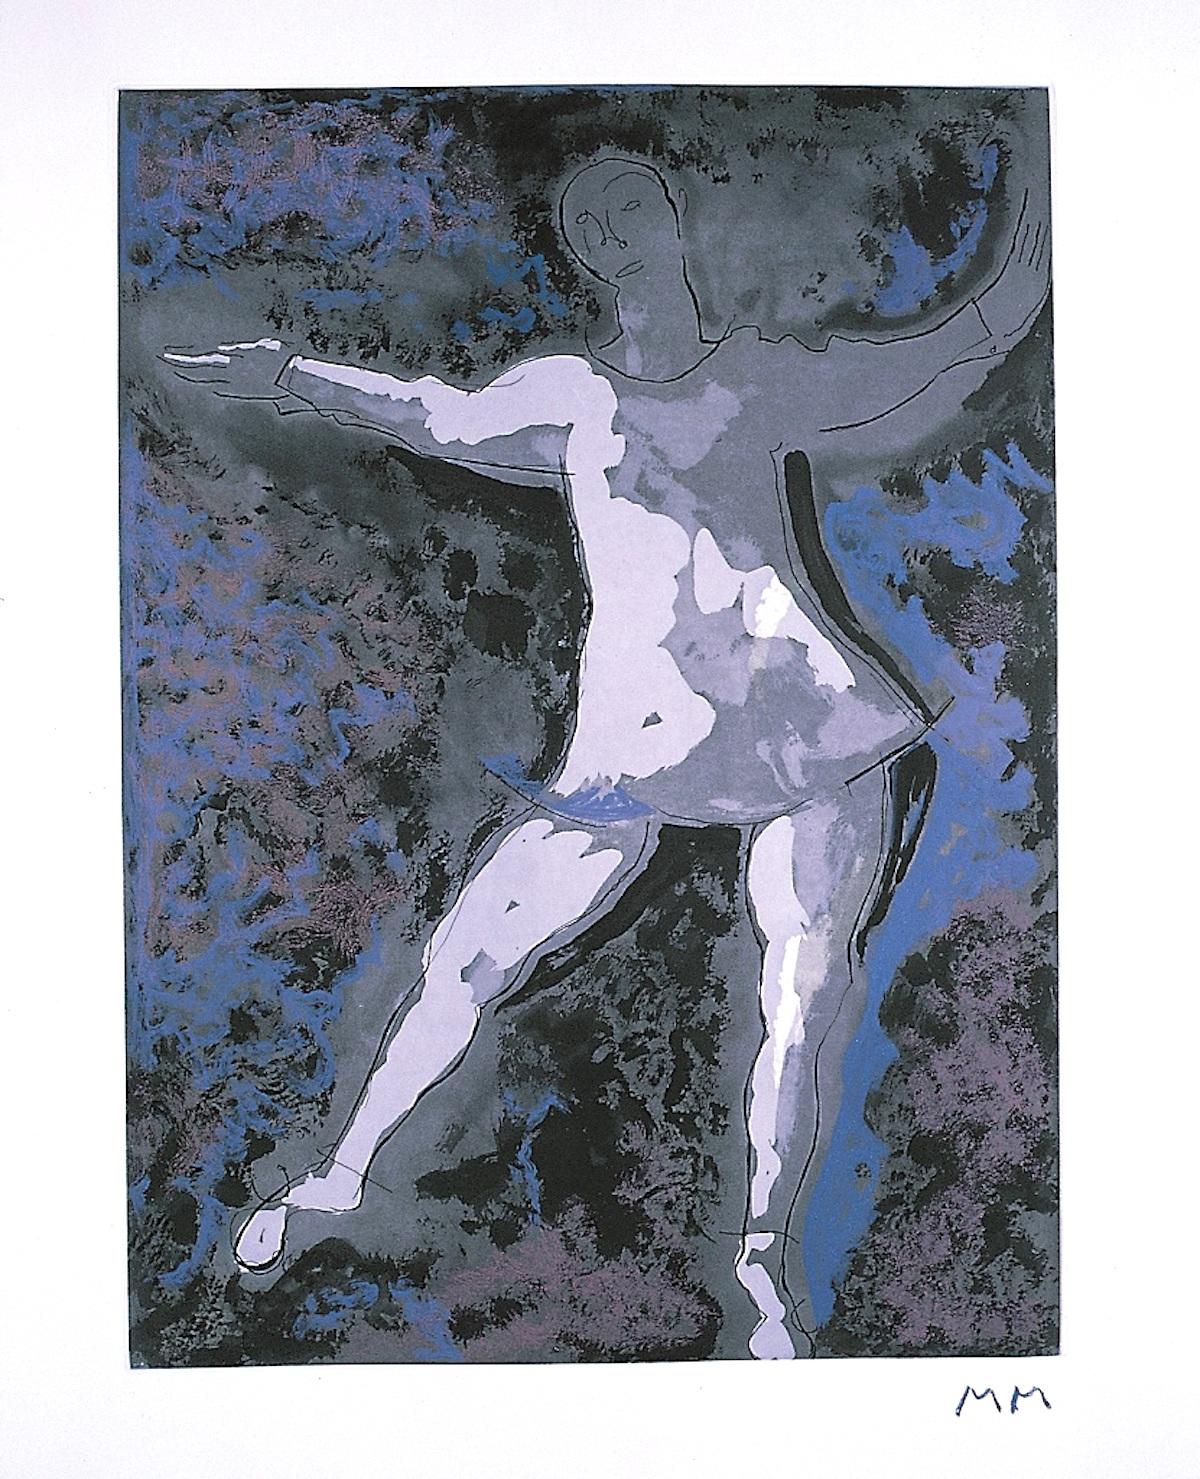 Abmessungen des Bildes: 50 x 36,5 cm.

Dancer II ist ein originales zeitgenössisches Kunstwerk von Marino Marini aus dem Jahr 1977.

Farbradierung und Aquatinta mit der Darstellung einer Tänzerin.

Herausgegeben von Graphis Arte, Livorno. 90